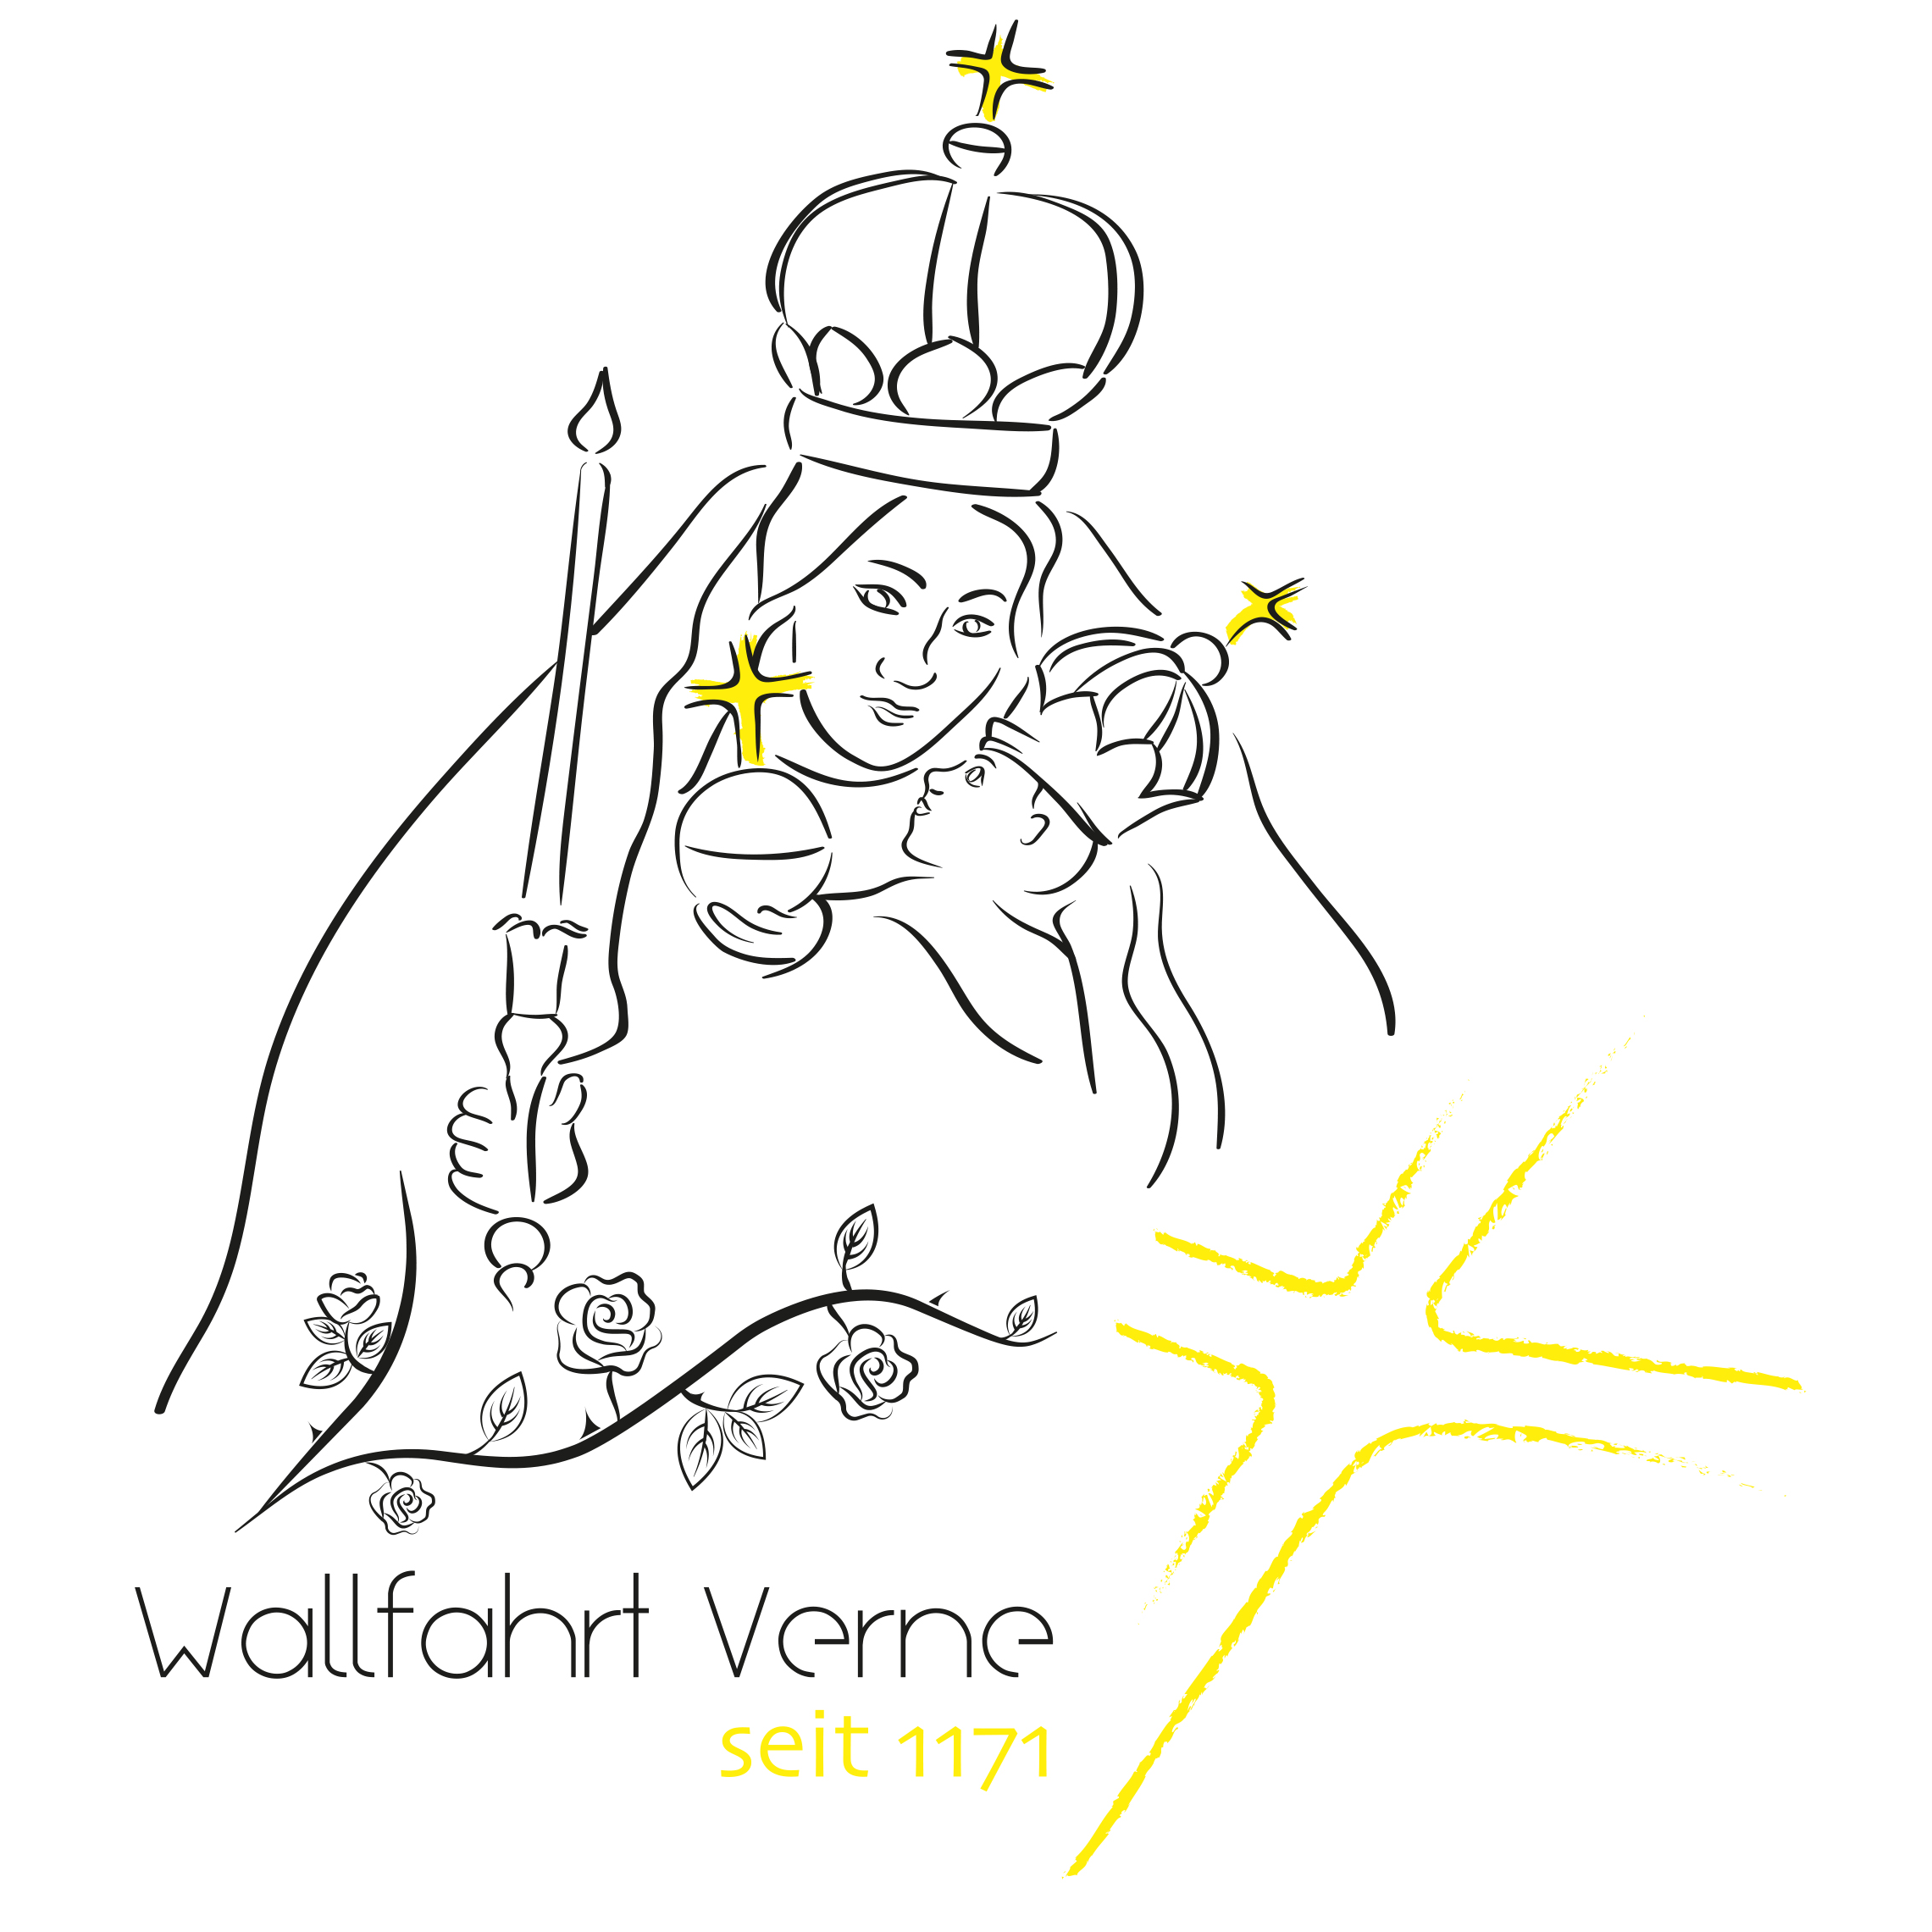 Wallfahrt in Verne – Seit 1171